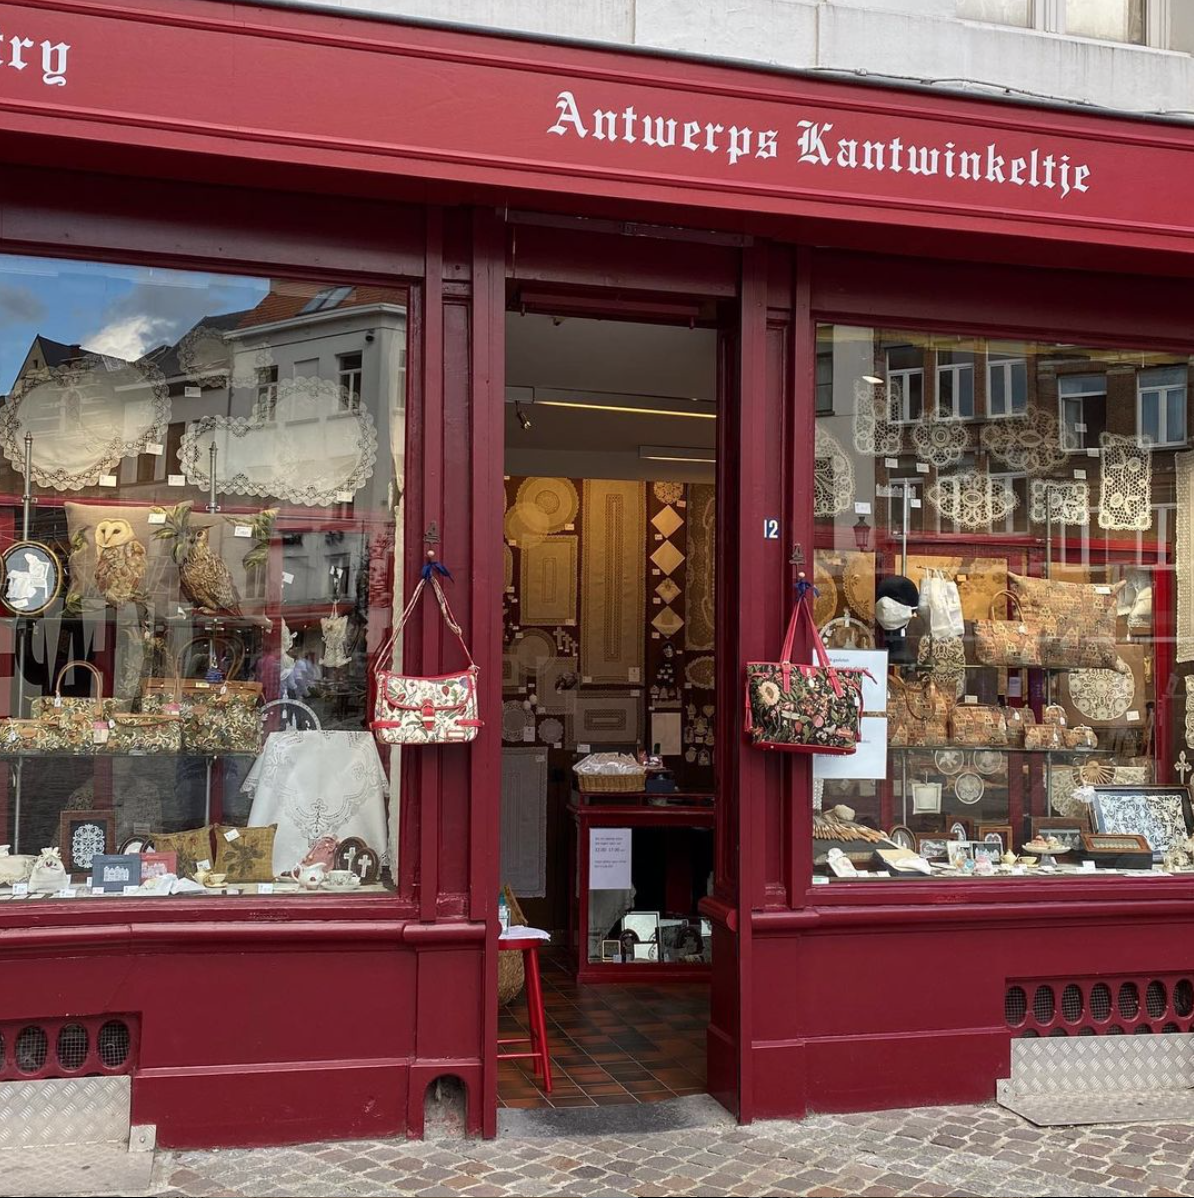 Antwerps Kantwinkeltje - Lace Shop - Belgium